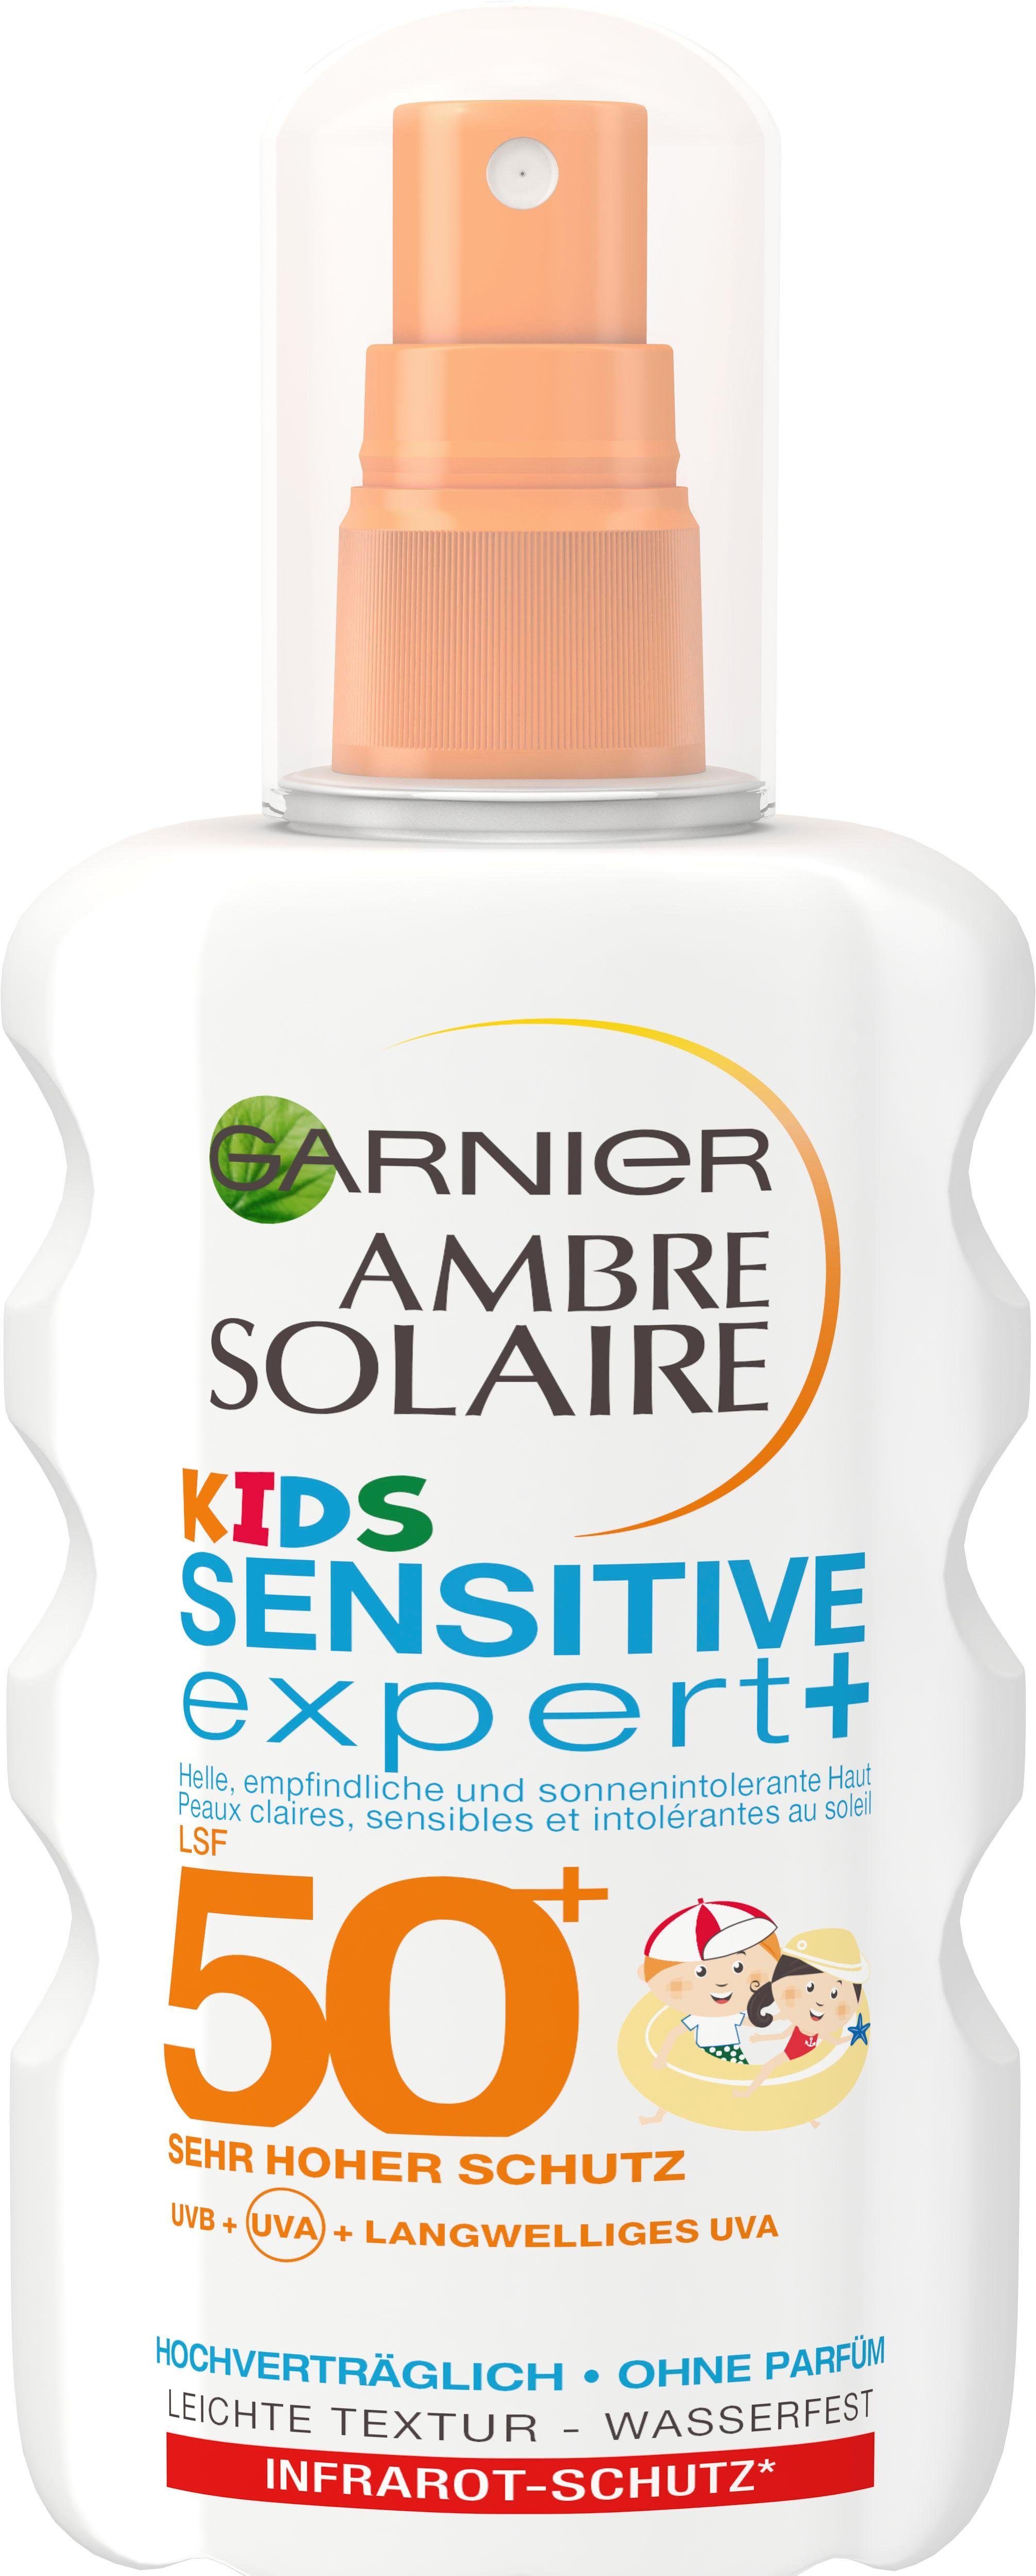 GARNIER Sonnenschutzspray Ambre Solaire Kids Sensitive Expert LSF 50+